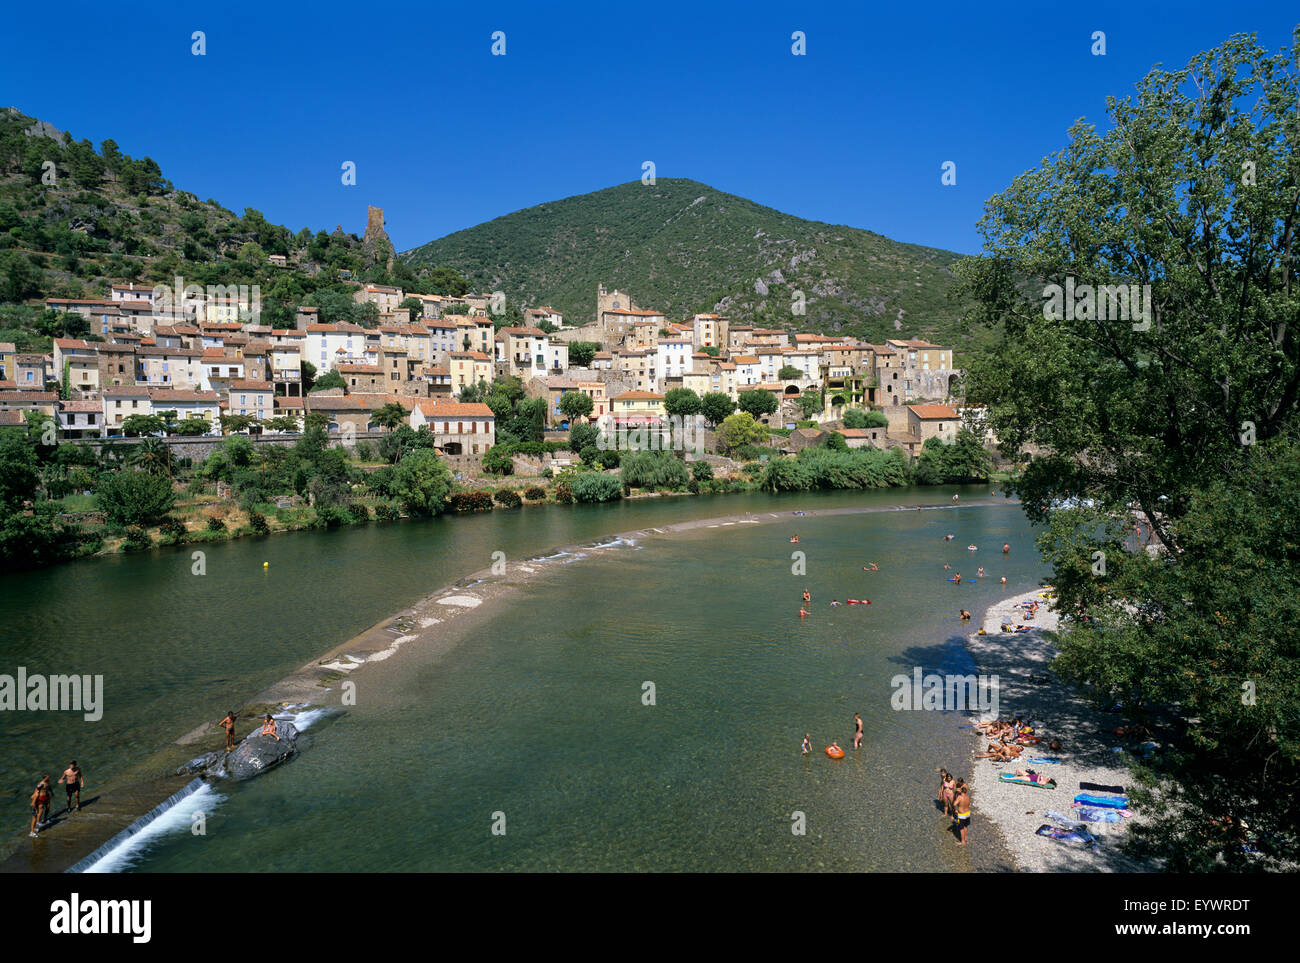 Villaggio sul fiume Orb, Roquebrun, dipartimento di Herault, Languedoc-Roussillon, Francia, Europa Foto Stock